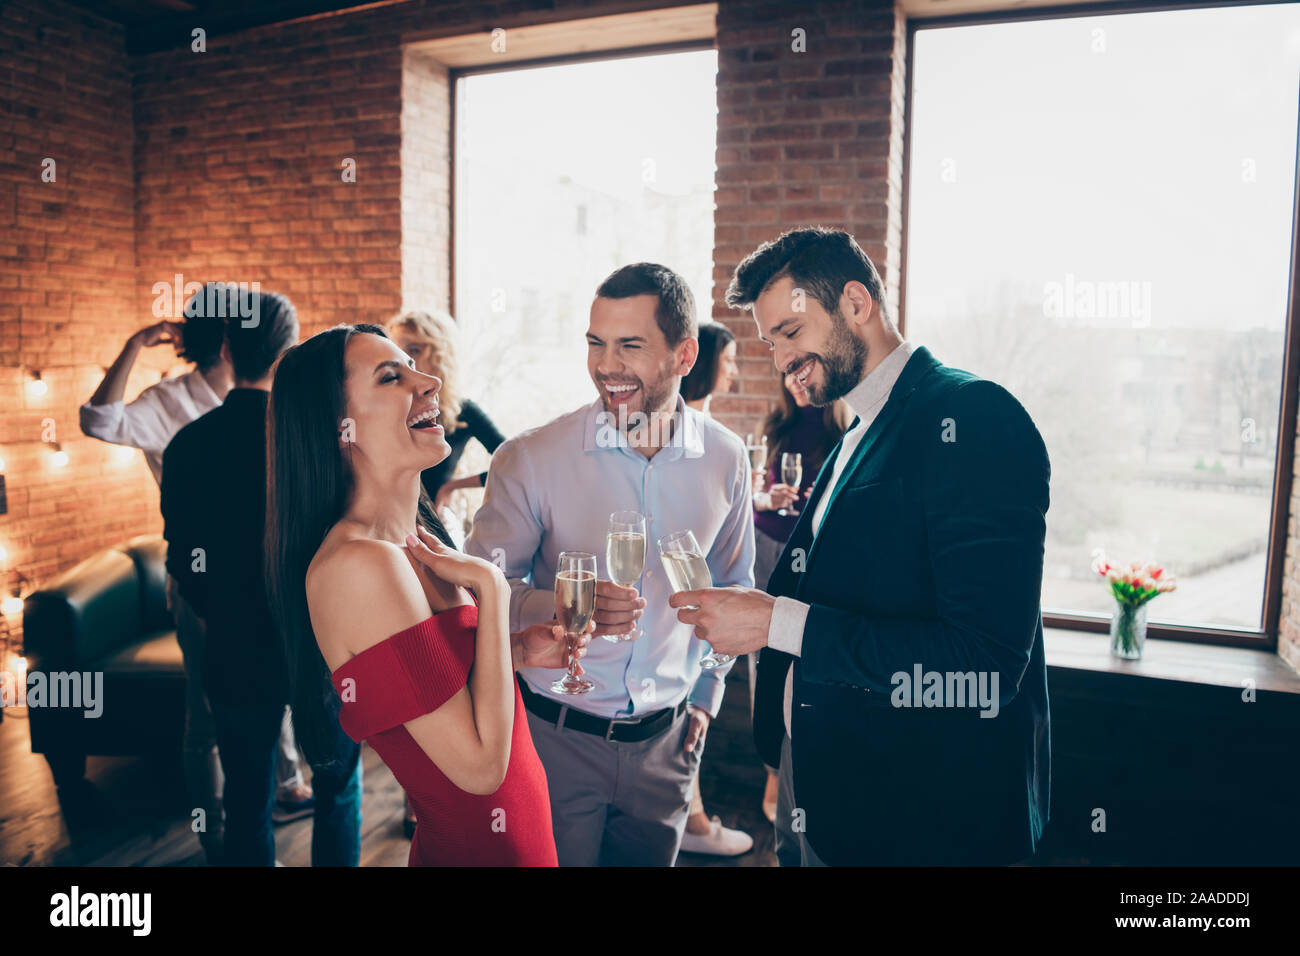 Foto de positiva alegre bonita chica guapa riendo con otros hombres bromeaba en su celebración vasos de alcohol vistiendo formalmente Foto de stock